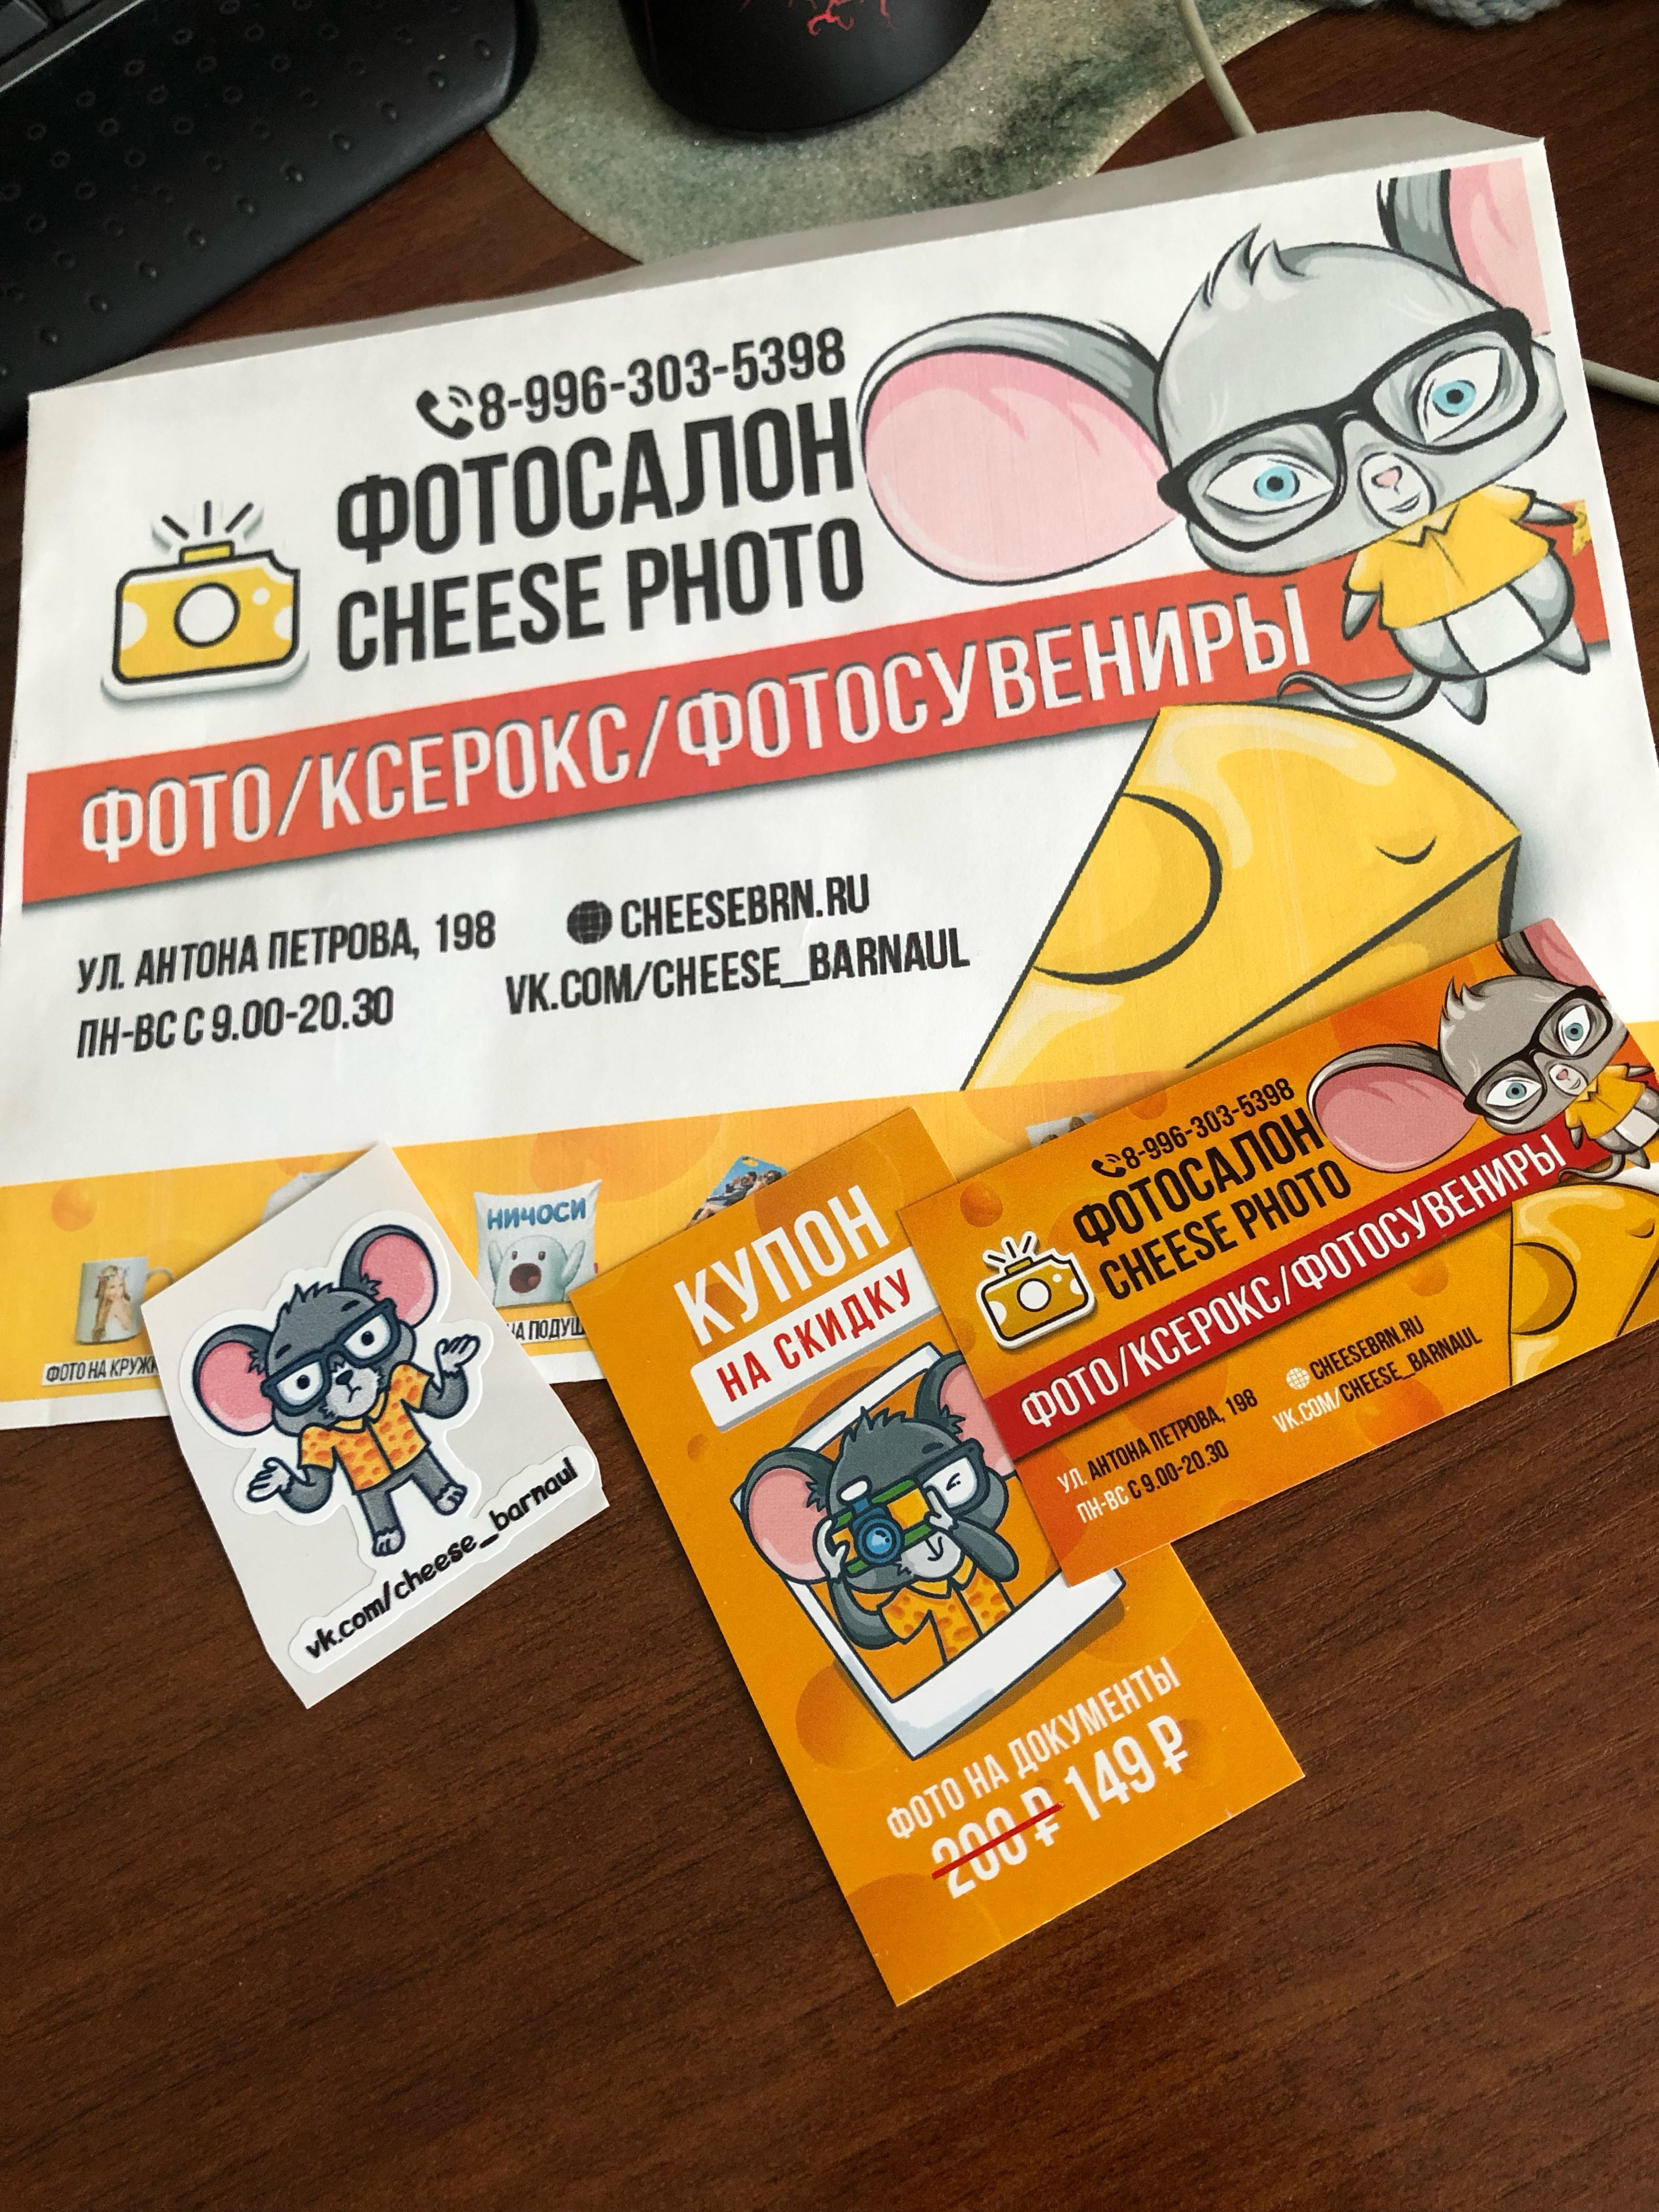 фотосалон cheese photo